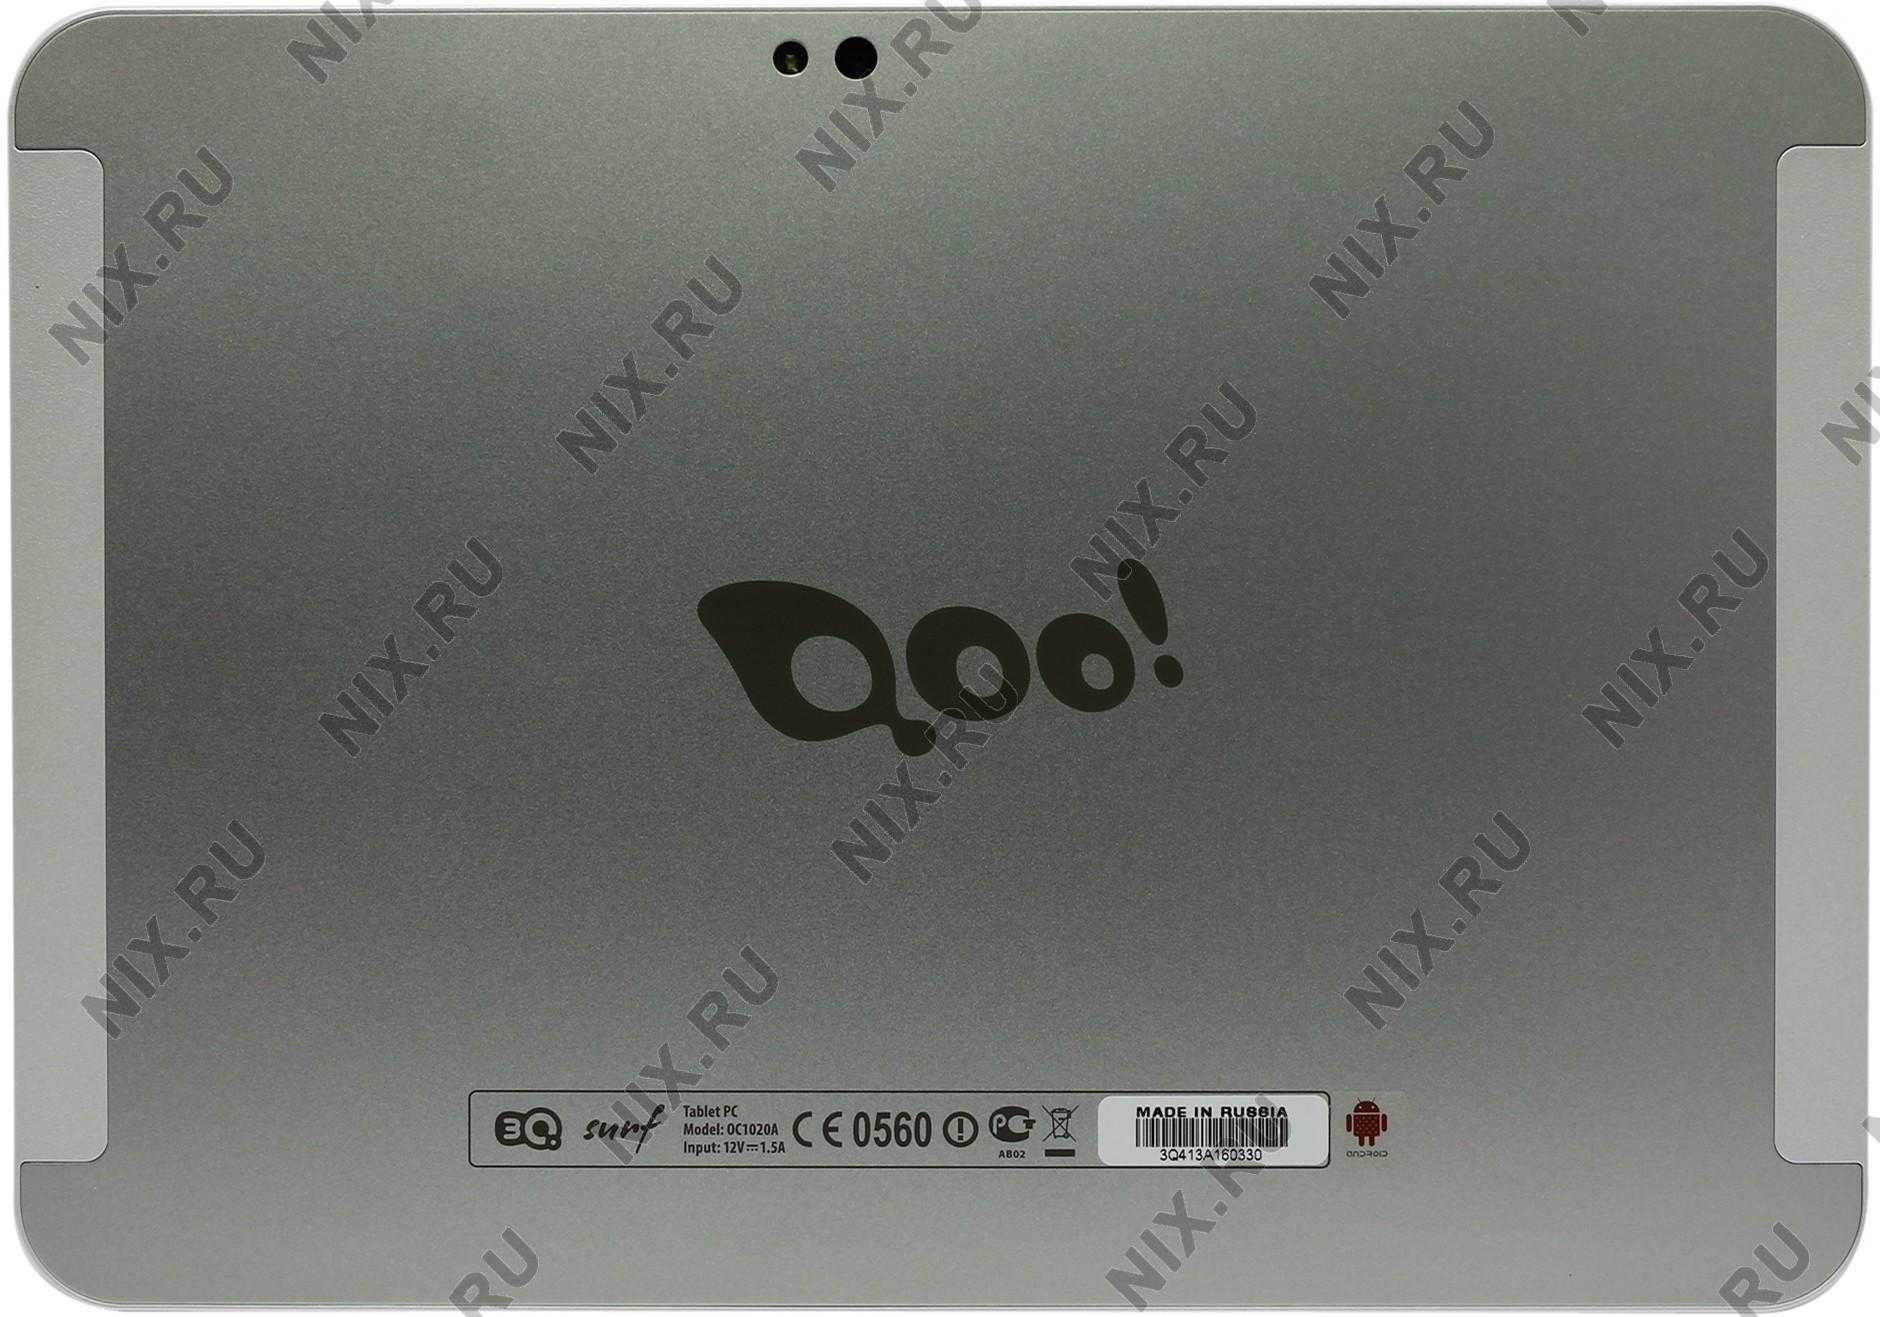 Замена стекла, сенсорной панели на планшете 3q surf lc9704a 8 гб wifi черный — купить, цена и характеристики, отзывы